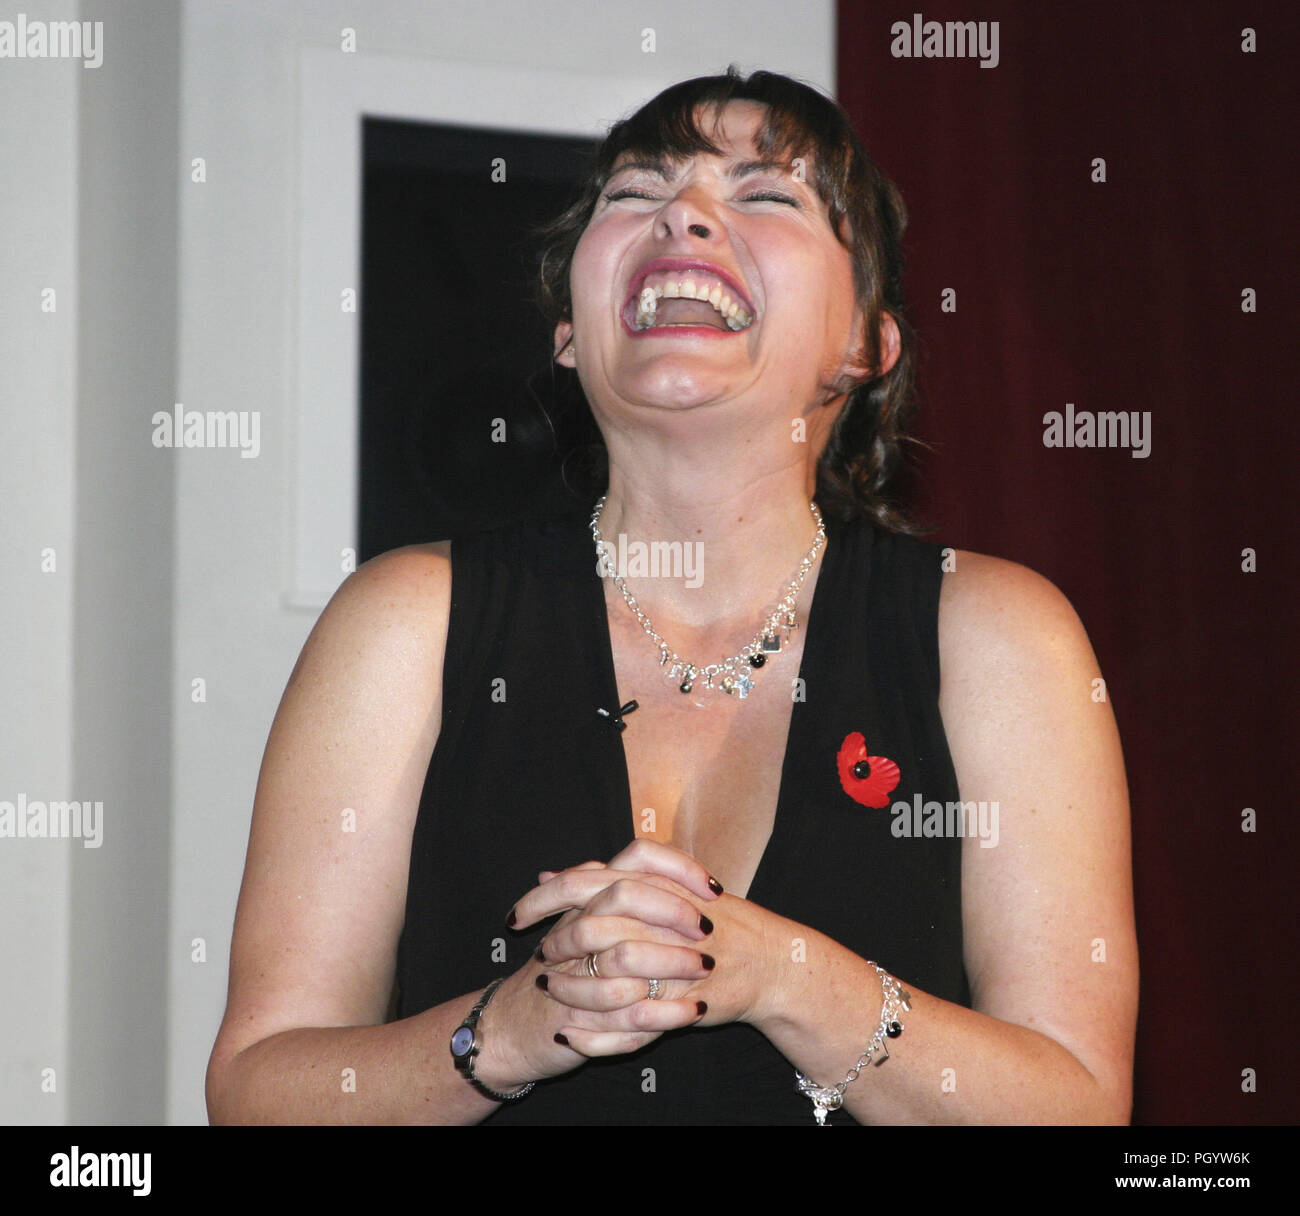 Die tv-Moderatorin, die Host- und Persönlichkeit, Lorraine Kelly, lachend den Kopf von einigen Bemerkung während ihrer Hosting der BAFTA Awards Zeremonie in Glasgow in Schottland. Stockfoto